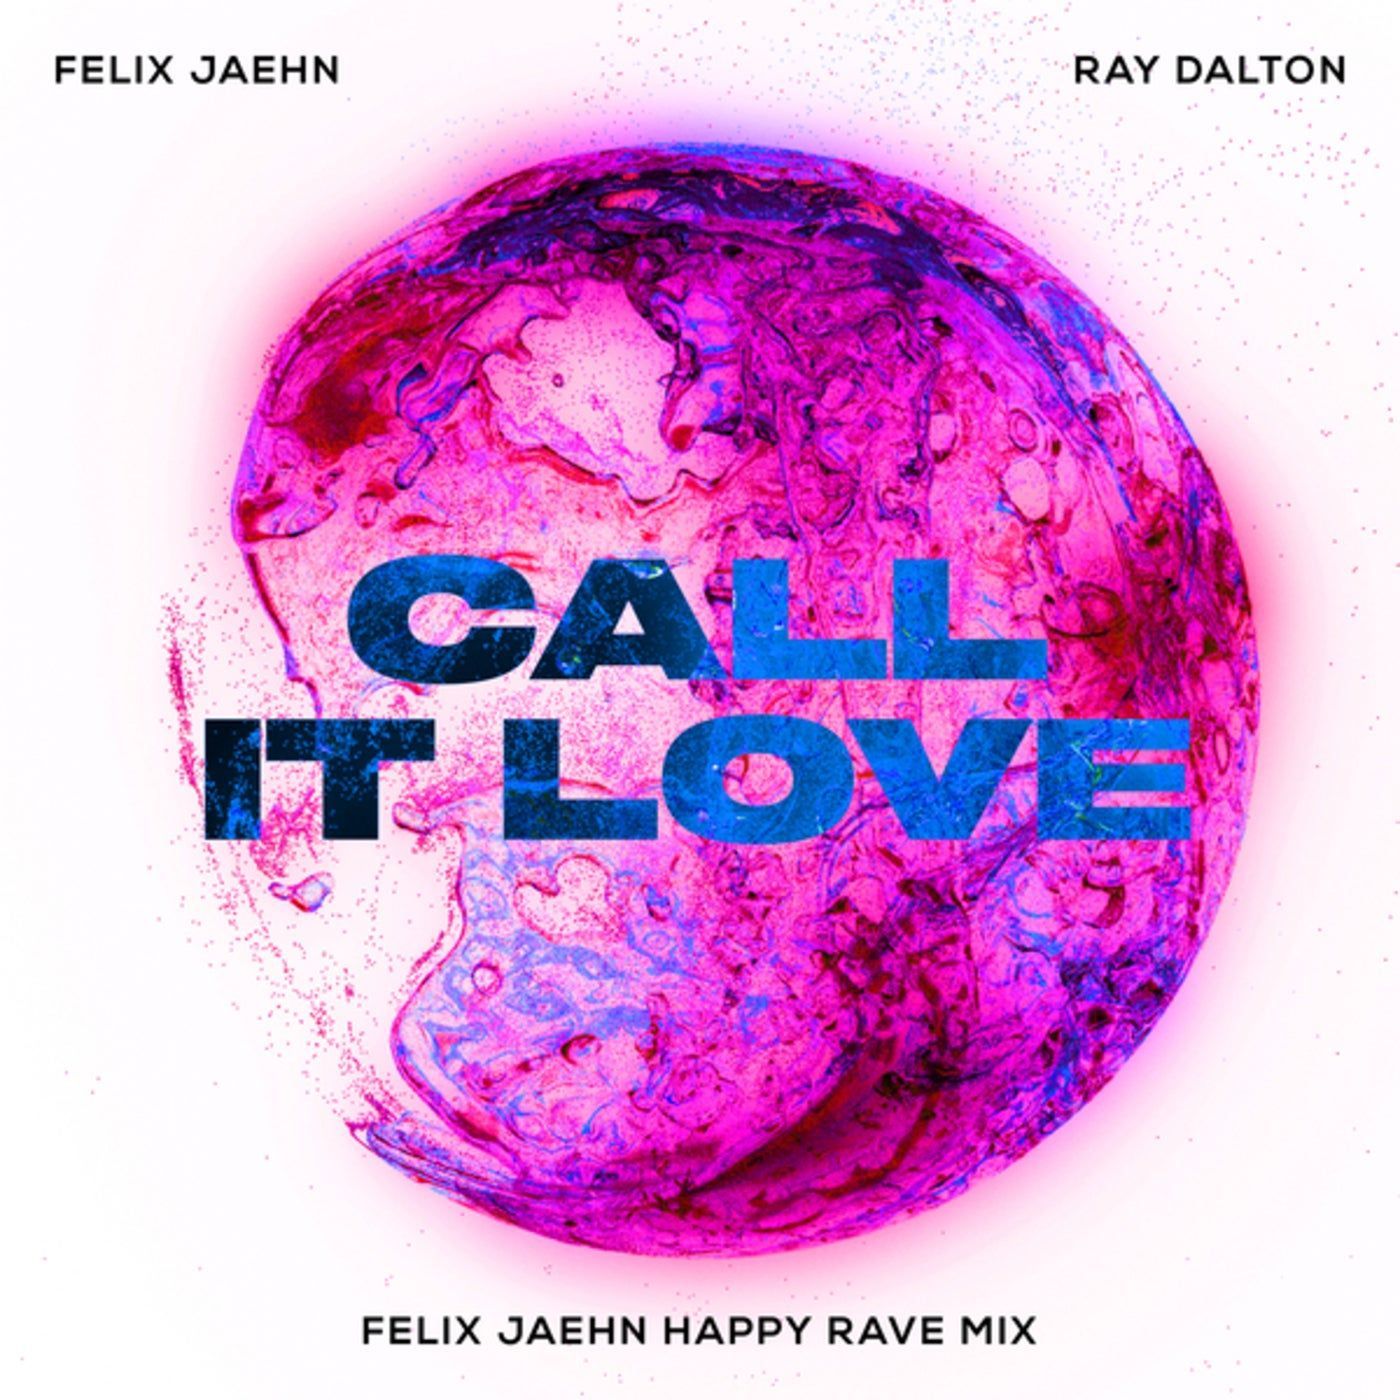  Felix Jaehn Hintergrundbild 1400x1400. Call It Love by Felix Jaehn and Ray Dalton on Beatsource